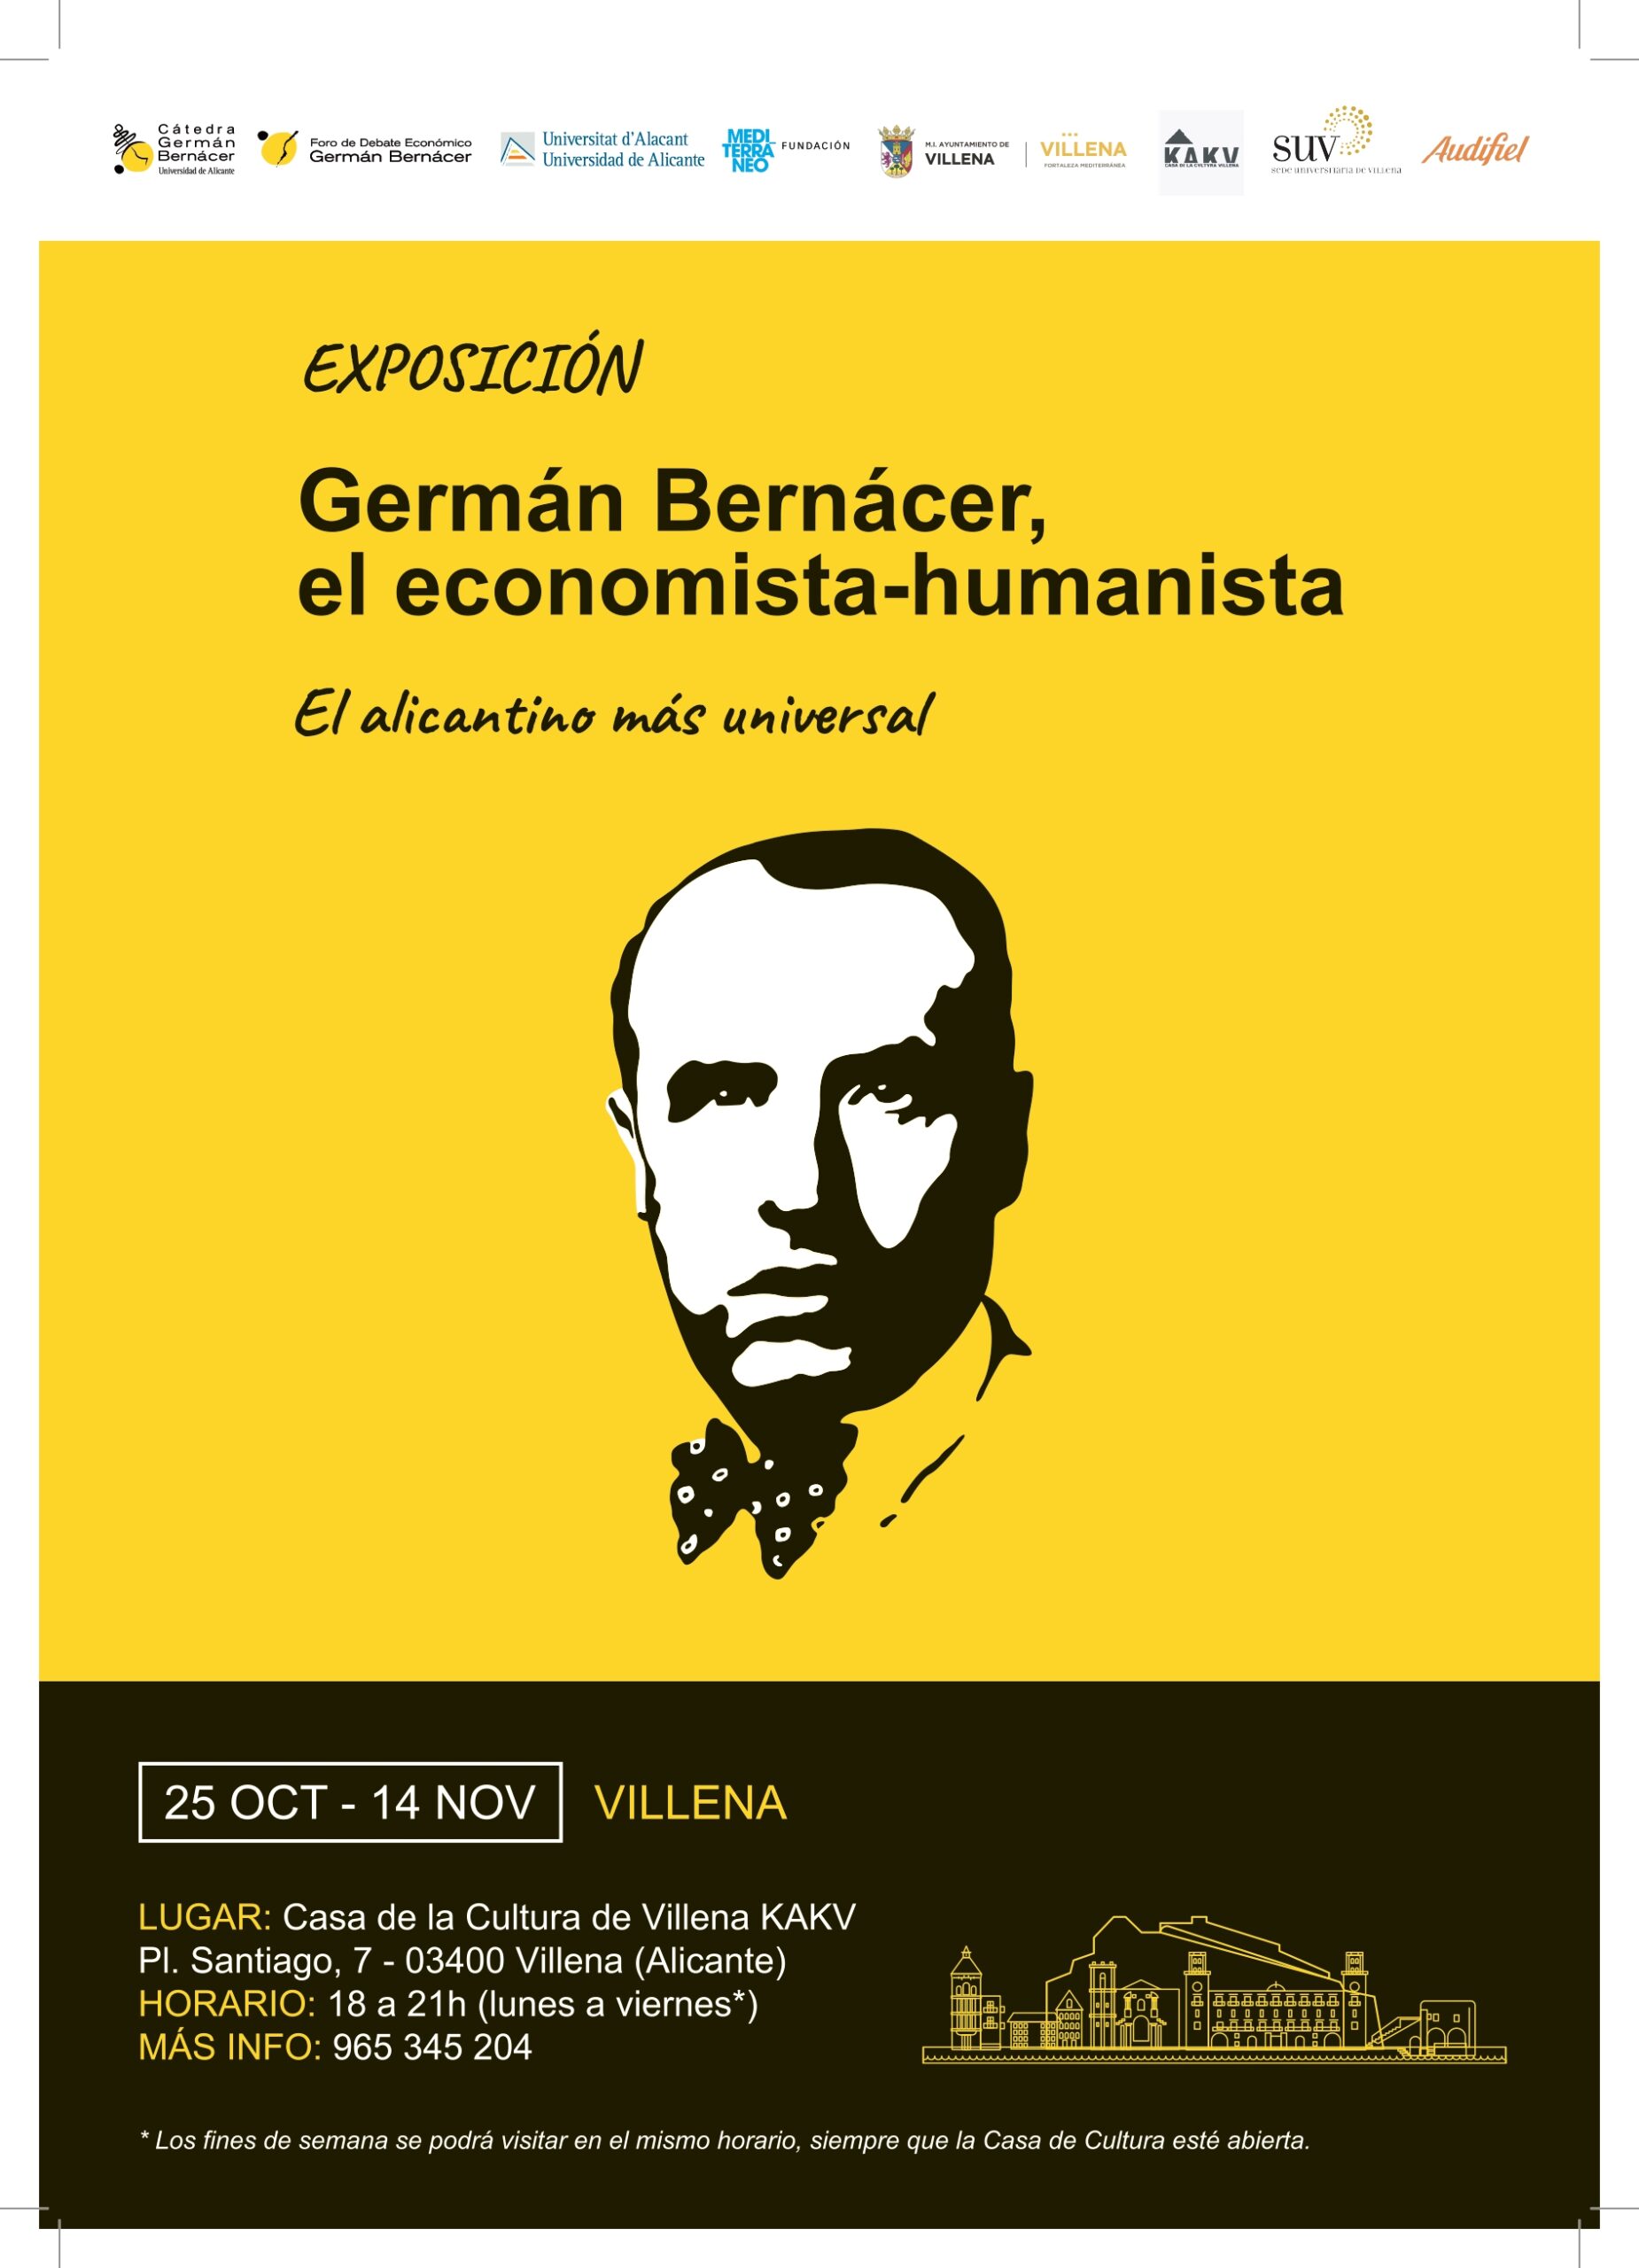 La Sede Universitaria organiza una exposición sobre Germán Benáncer